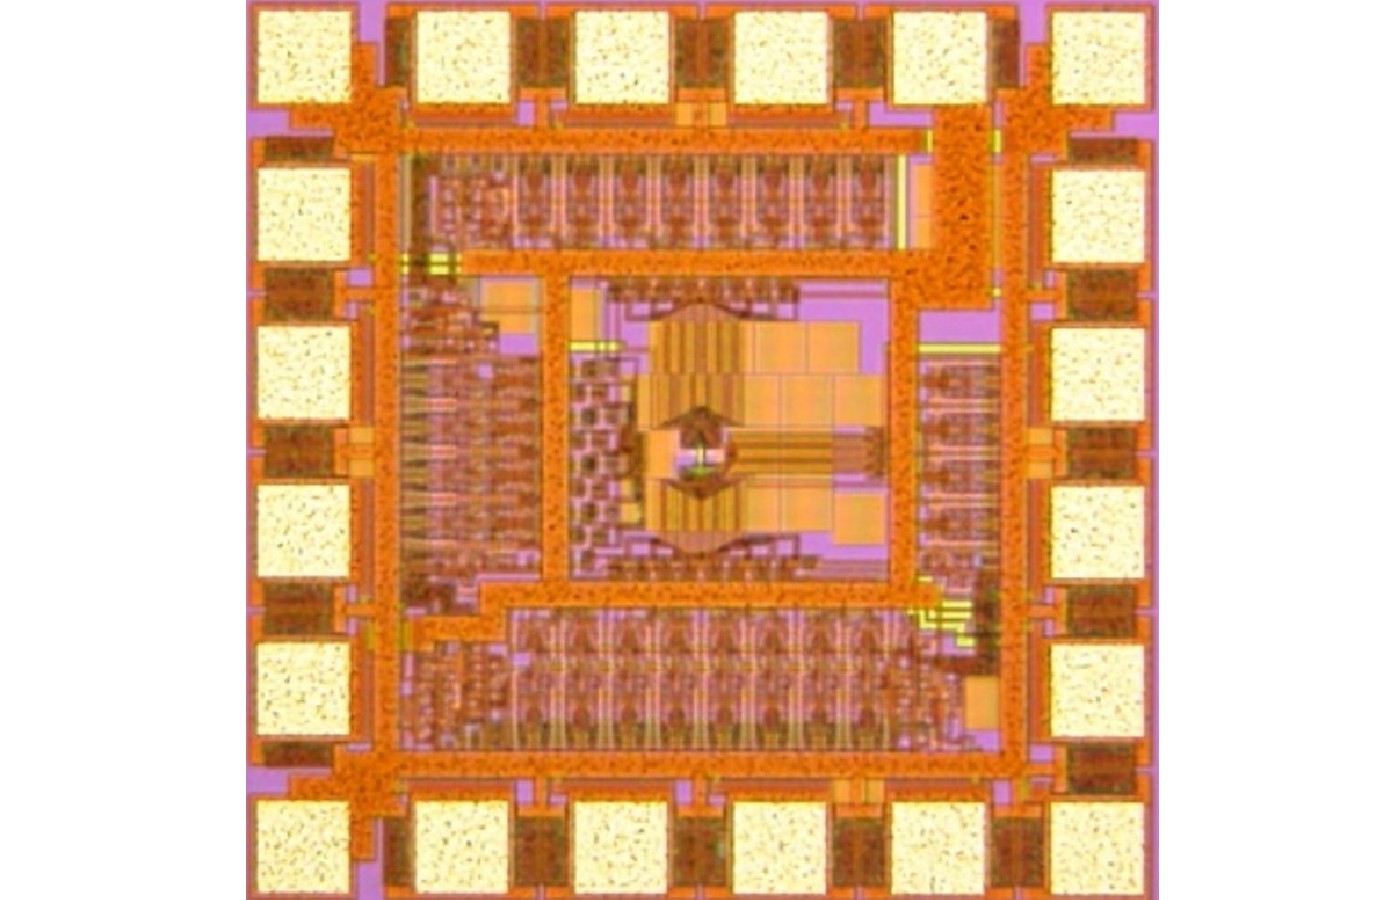 日立製作所が取り組むCMOSアニーリングマシン&量子ゲート型のシリコン量子コンピューター